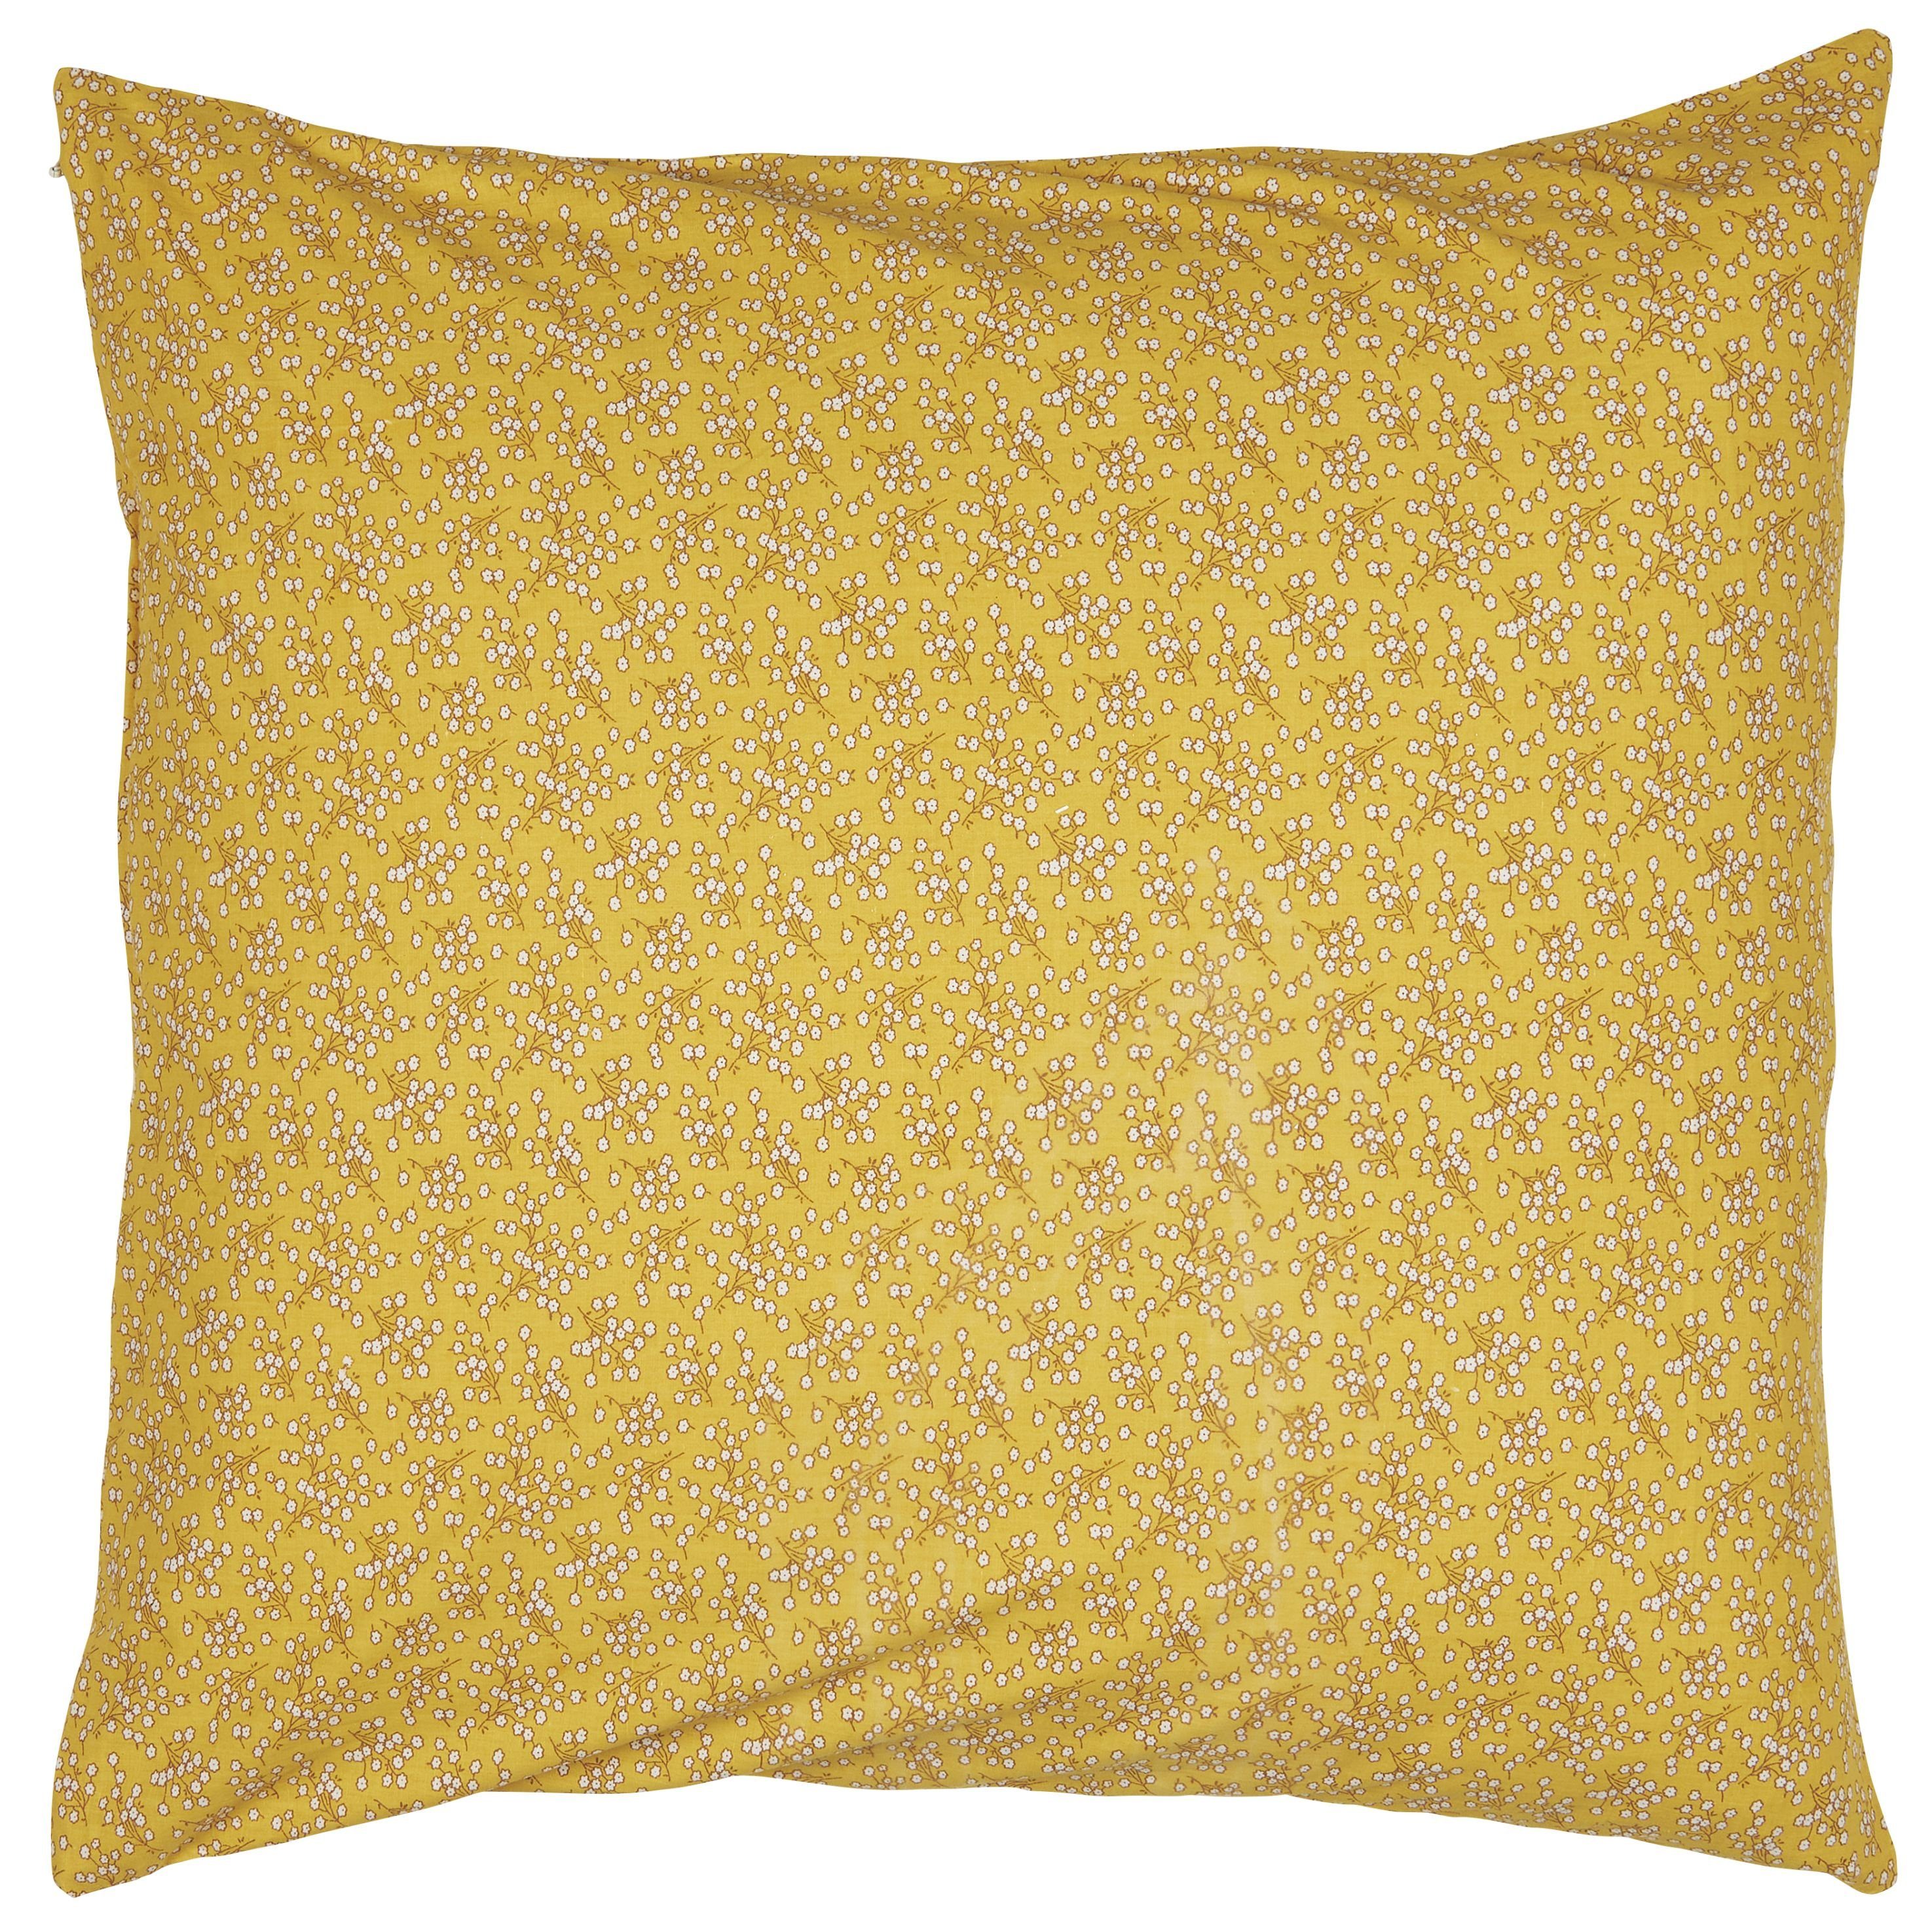 Federkissen Kissenbezug Kissenhülle Baumwolle Blumenmuster Gelb Weiß 50x50cm, Ib Laursen